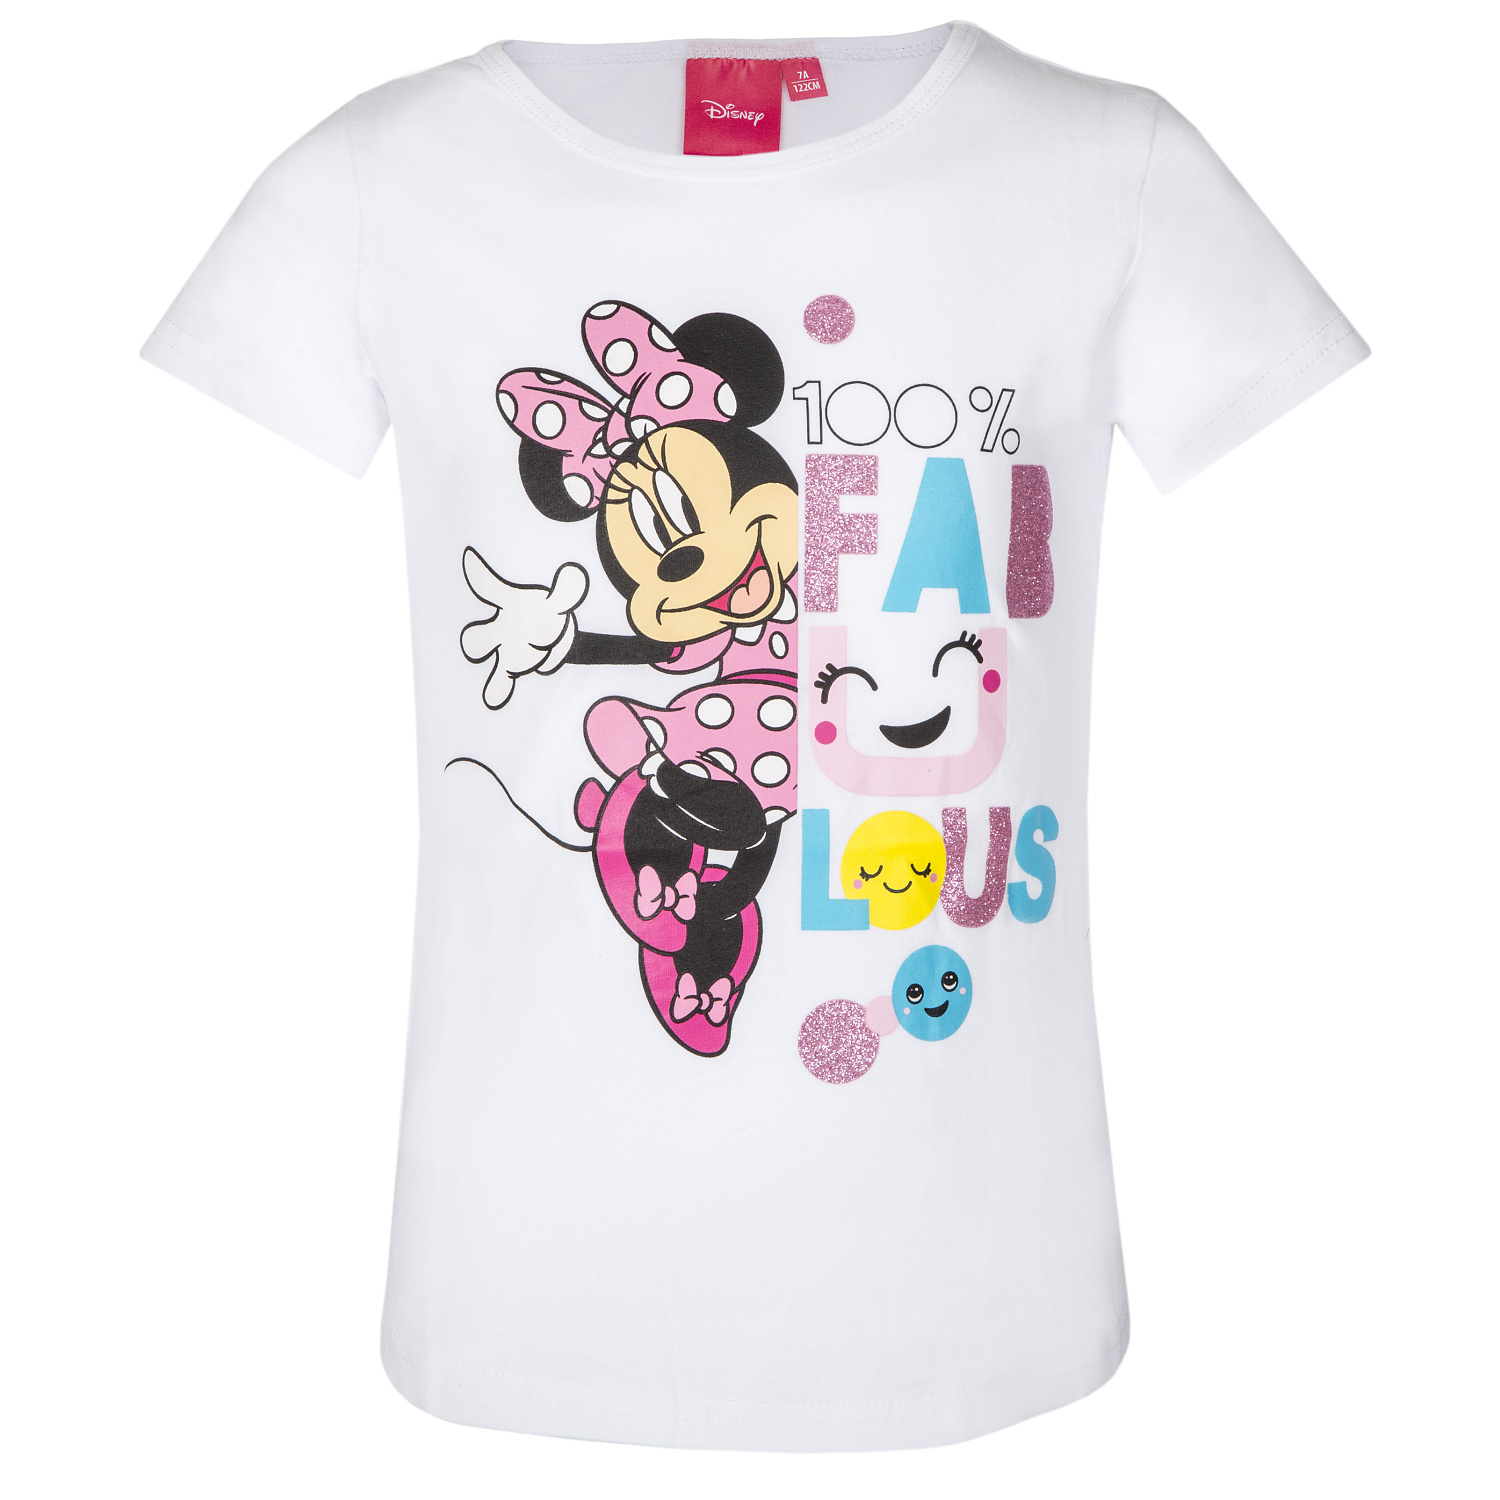 Minnie Mouse - licence Dívčí tričko - Minnie Mouse 201, bílá Barva: Bílá, Velikost: 104